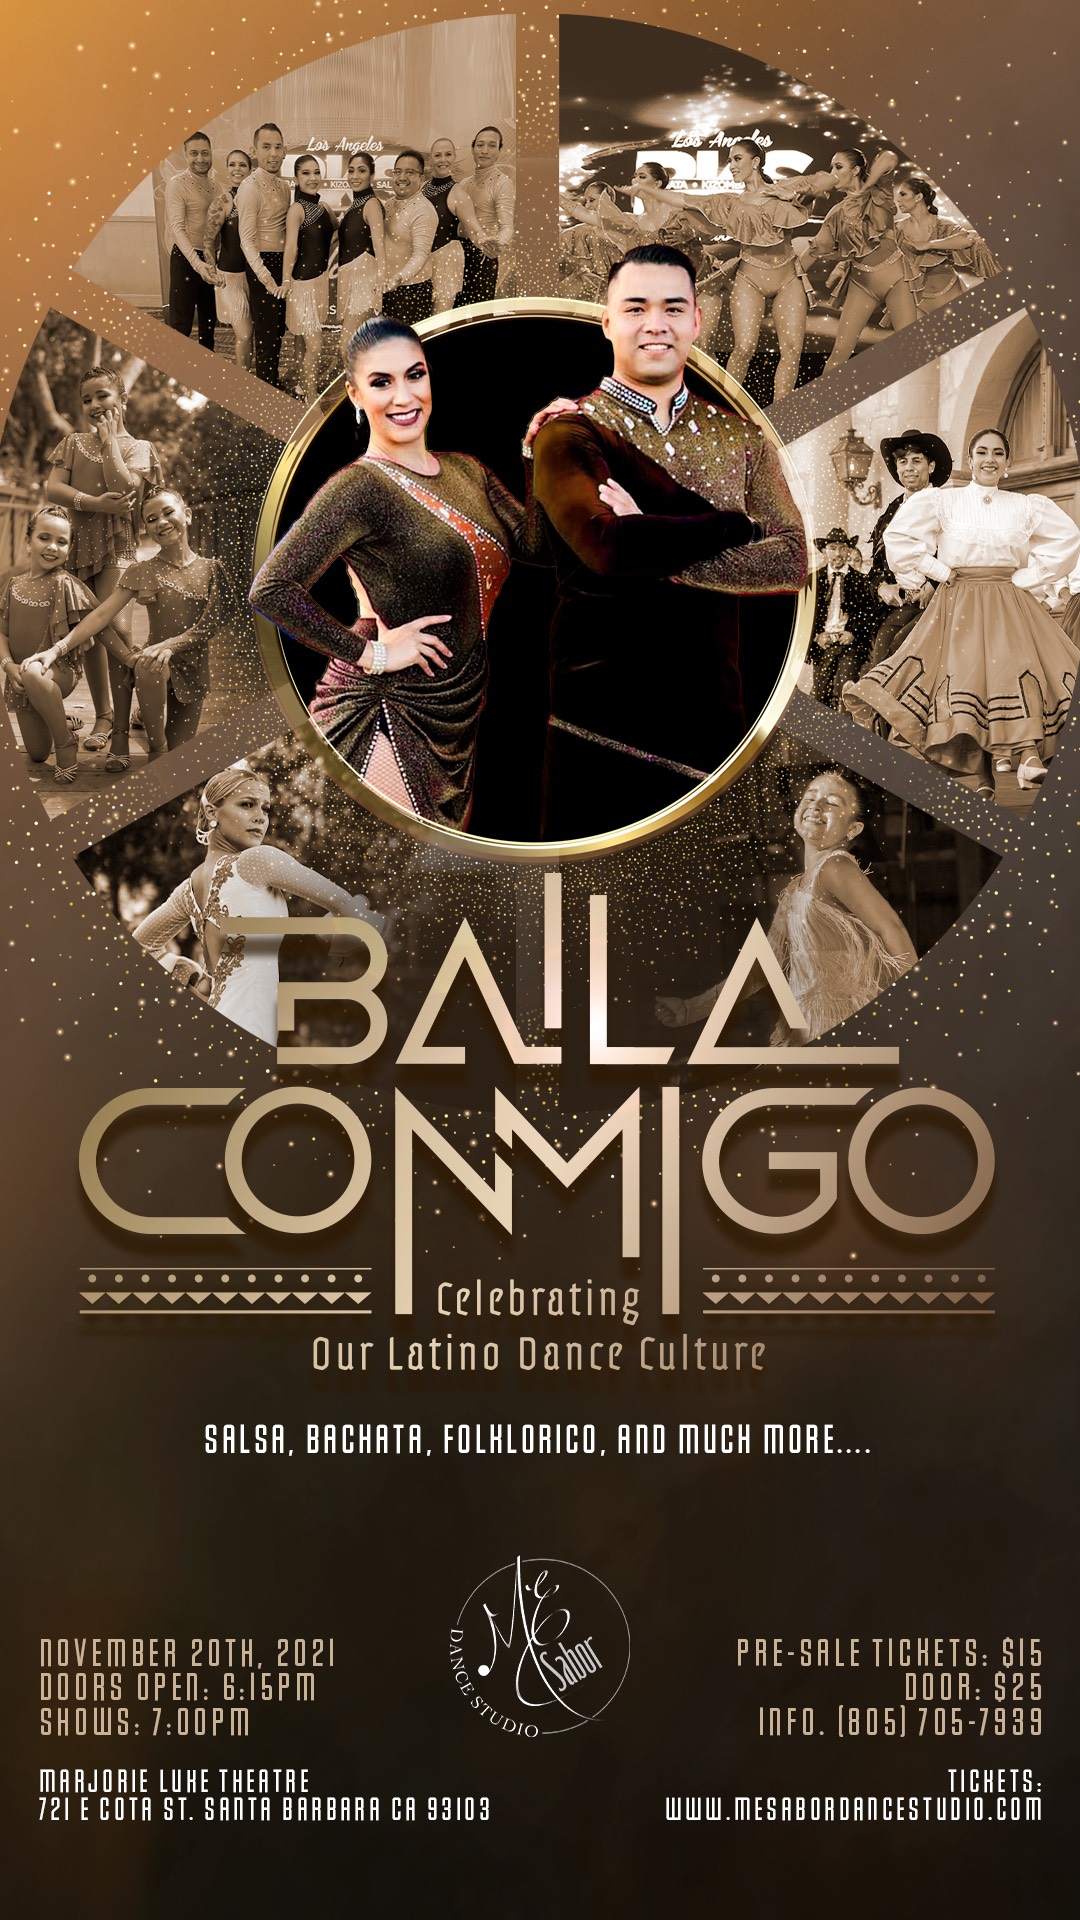 ME Sabor: Baila Conmigo - The Luke Theatre